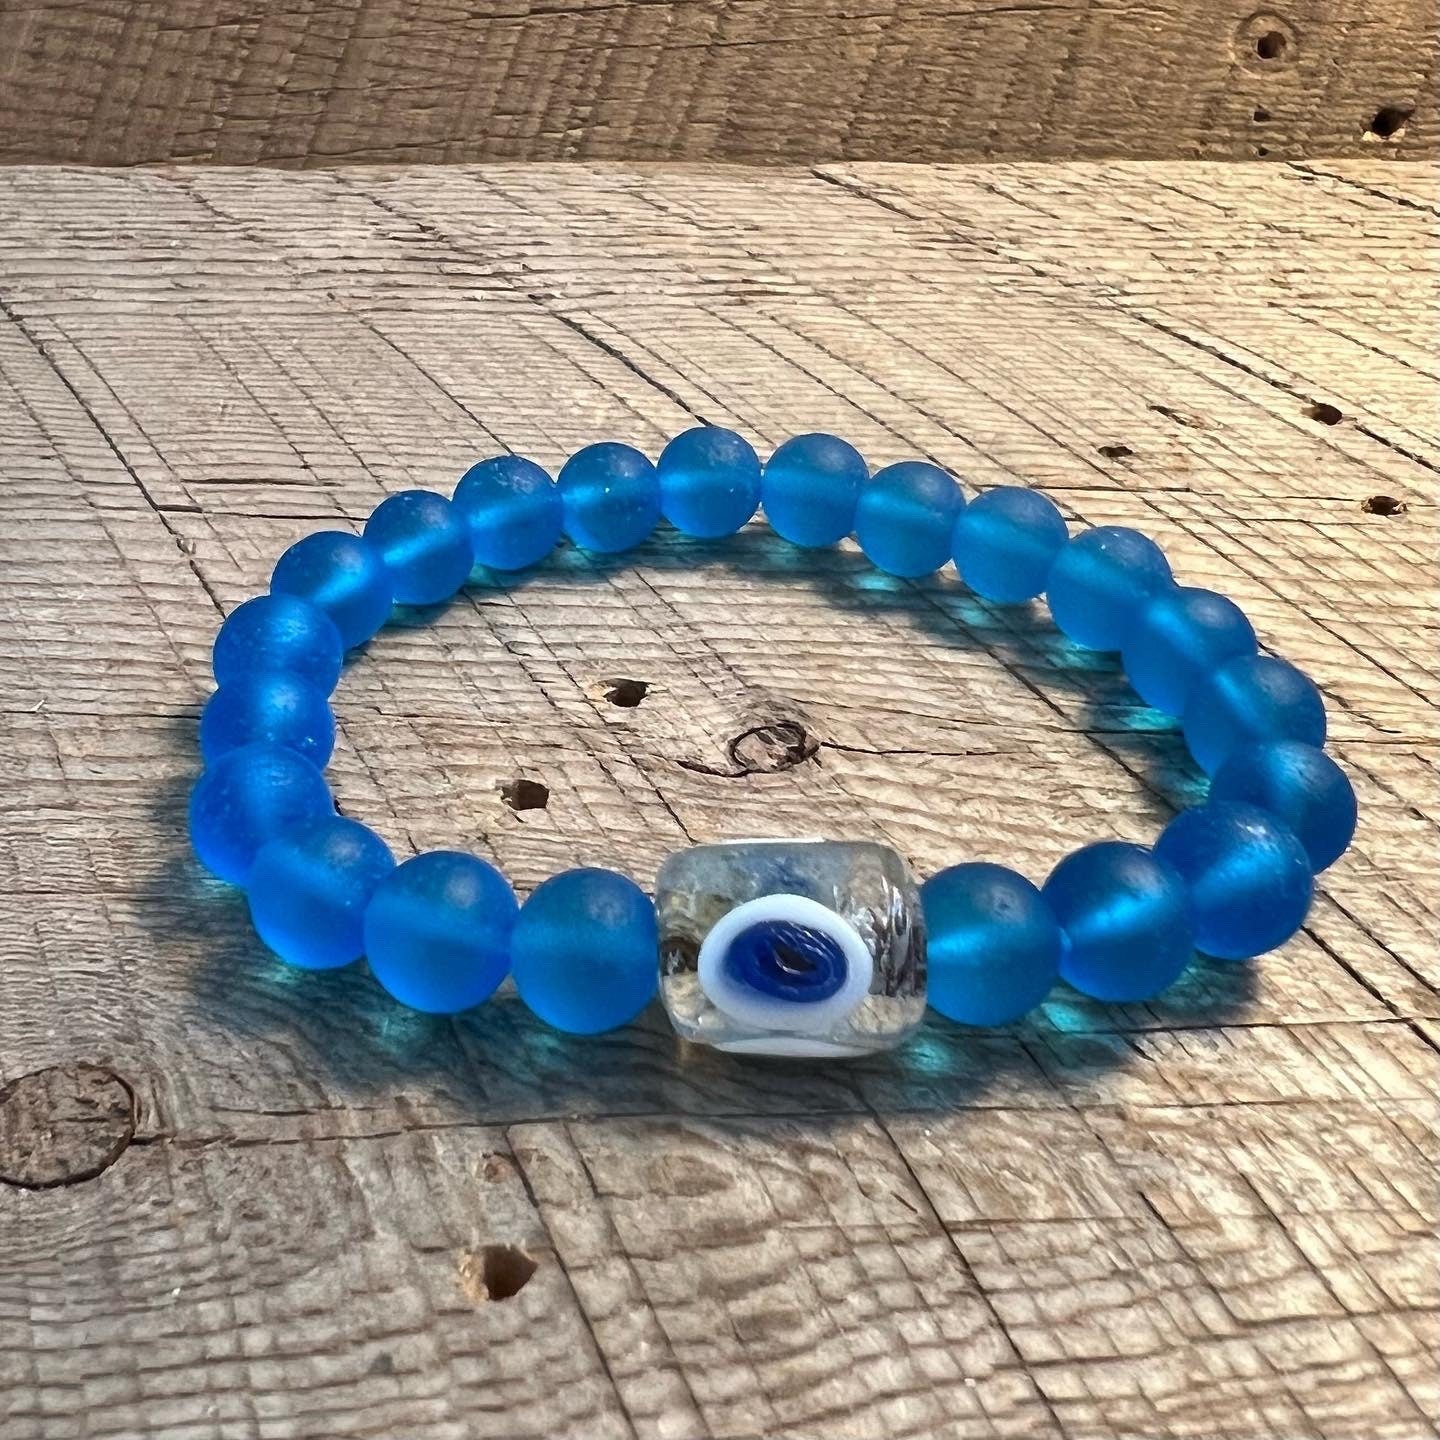 SariBlue®️ Cultured Seaglass Evil Eye Bracelets: Lavender, Ultra Blue and Cobalt Blue